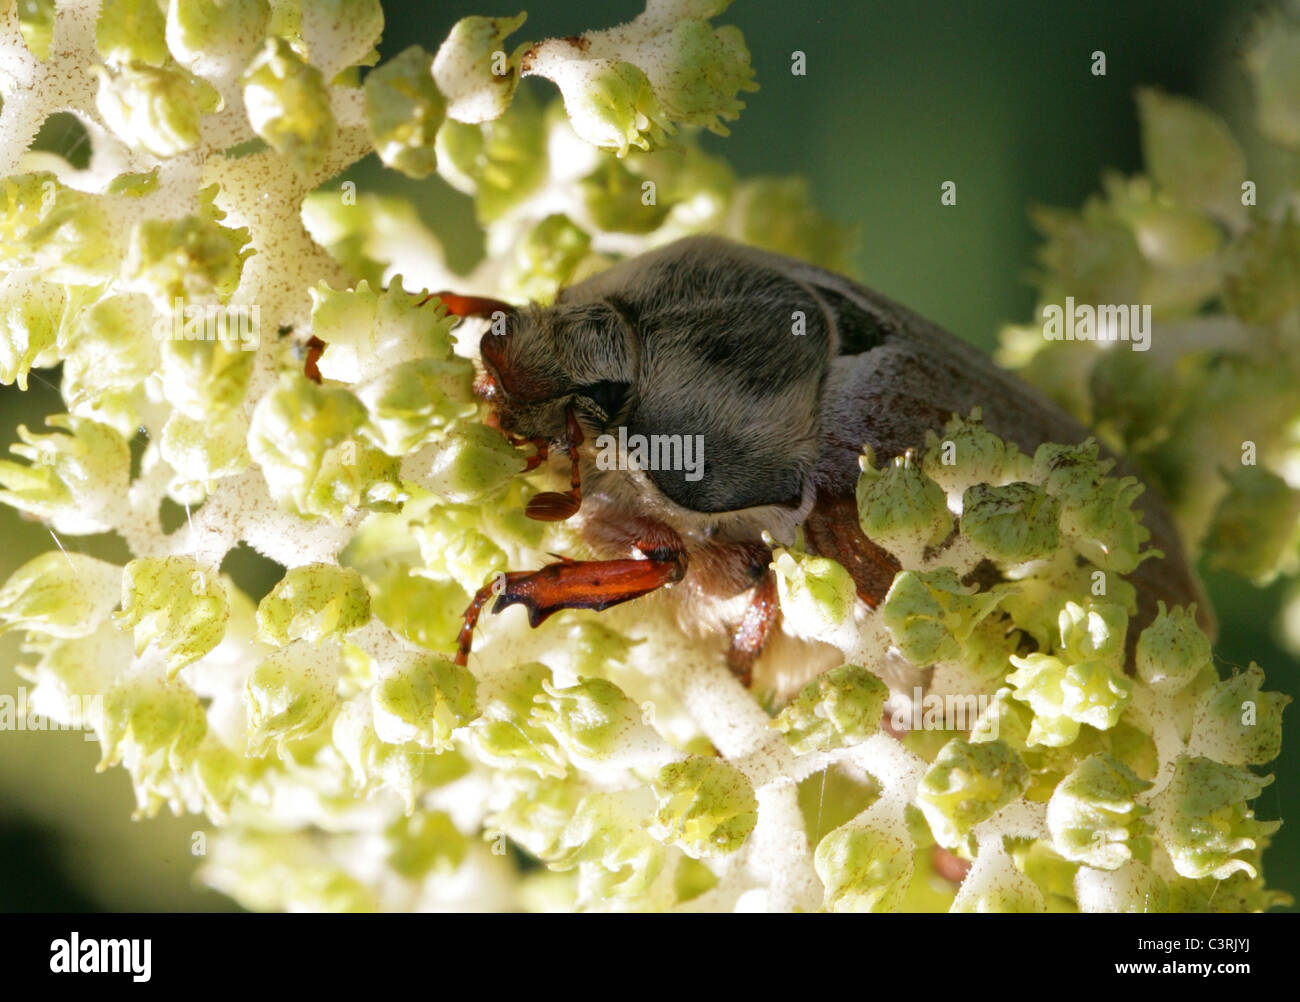 Maybug or Cockchafer, Melolontha melolontha, Melolonthinae, Poxviridae, Coleoptera. Stock Photo